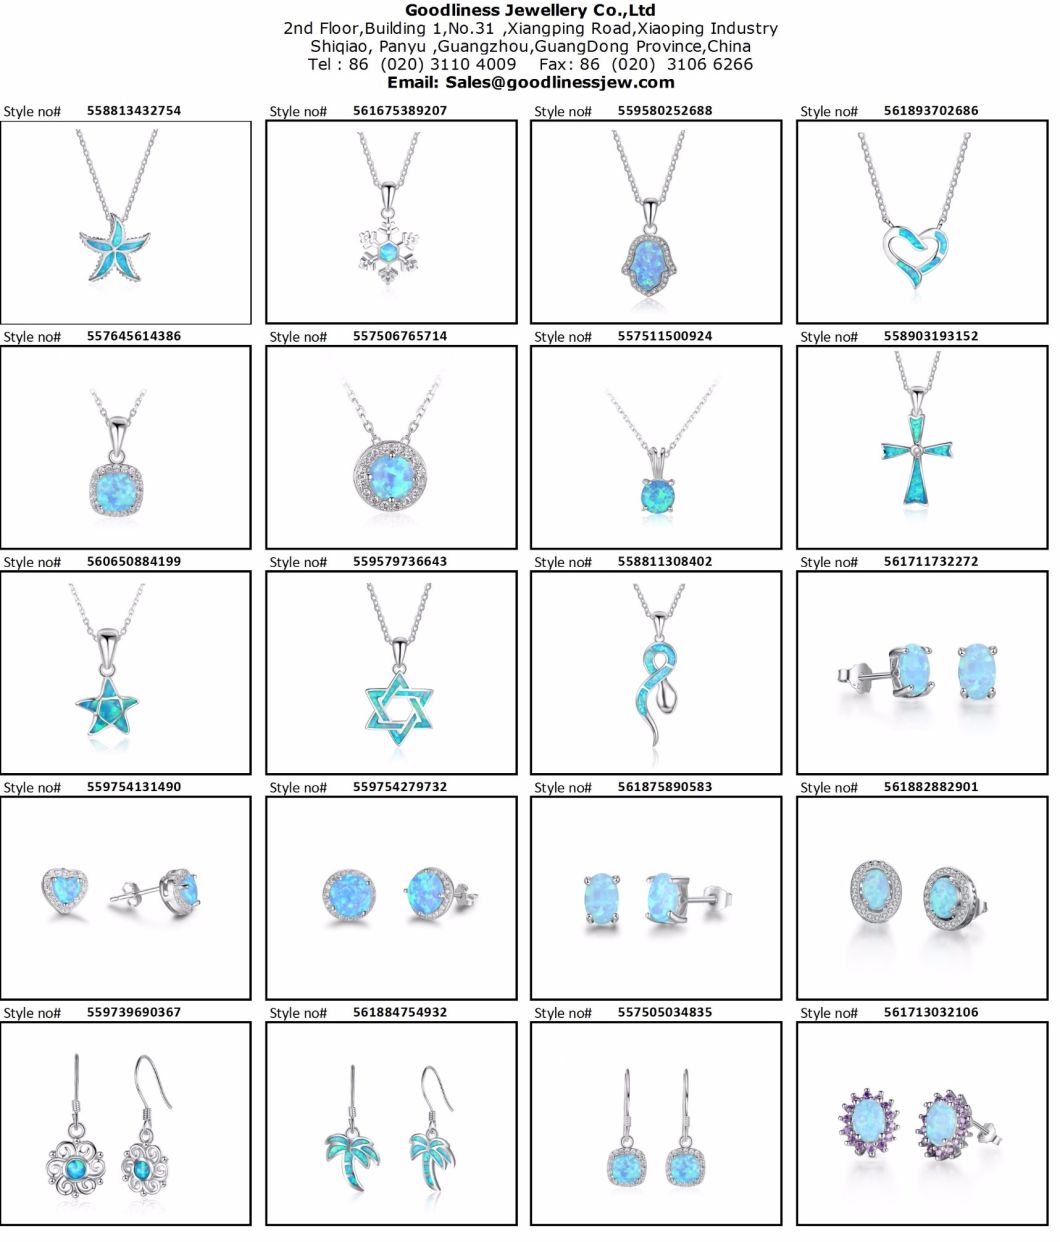 925 Silver Fashion Jewelry Opal Stud Earring (561713032106)